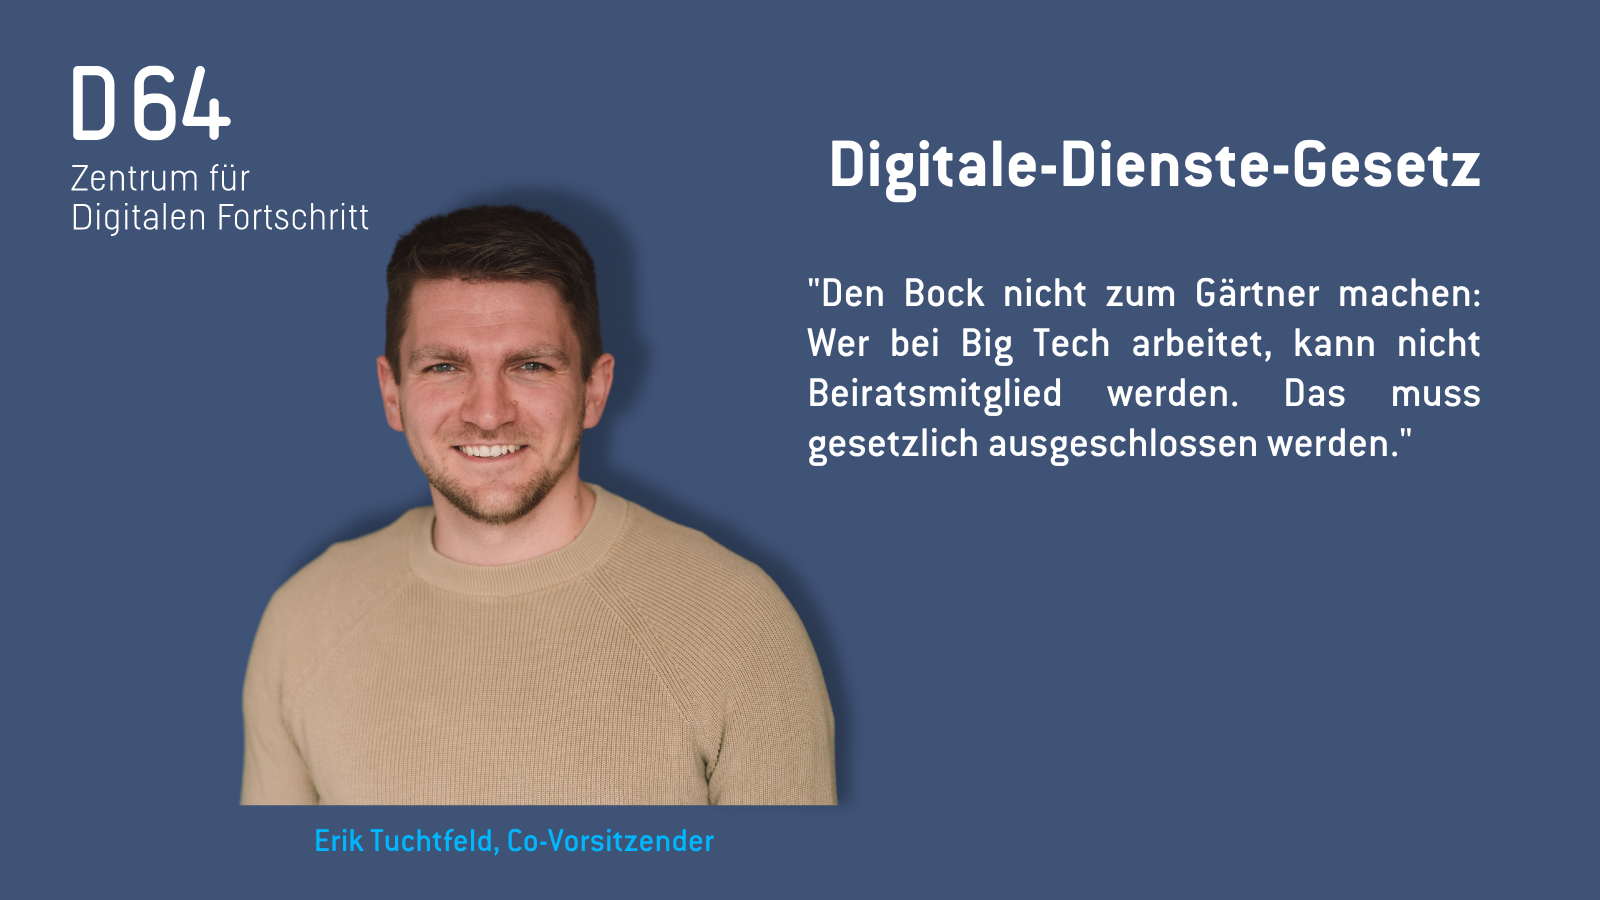 D64-Sharepic: mit Porträtfoto von Erik Tuchtfeld. Digitale-Dienste-Gesetz "Den Bock nicht zum Gärtner machen: Wer bei Big Tech arbeitet, kann nicht Beiratsmitglied werden. Das muss gesetzlich ausgeschlossen werden."